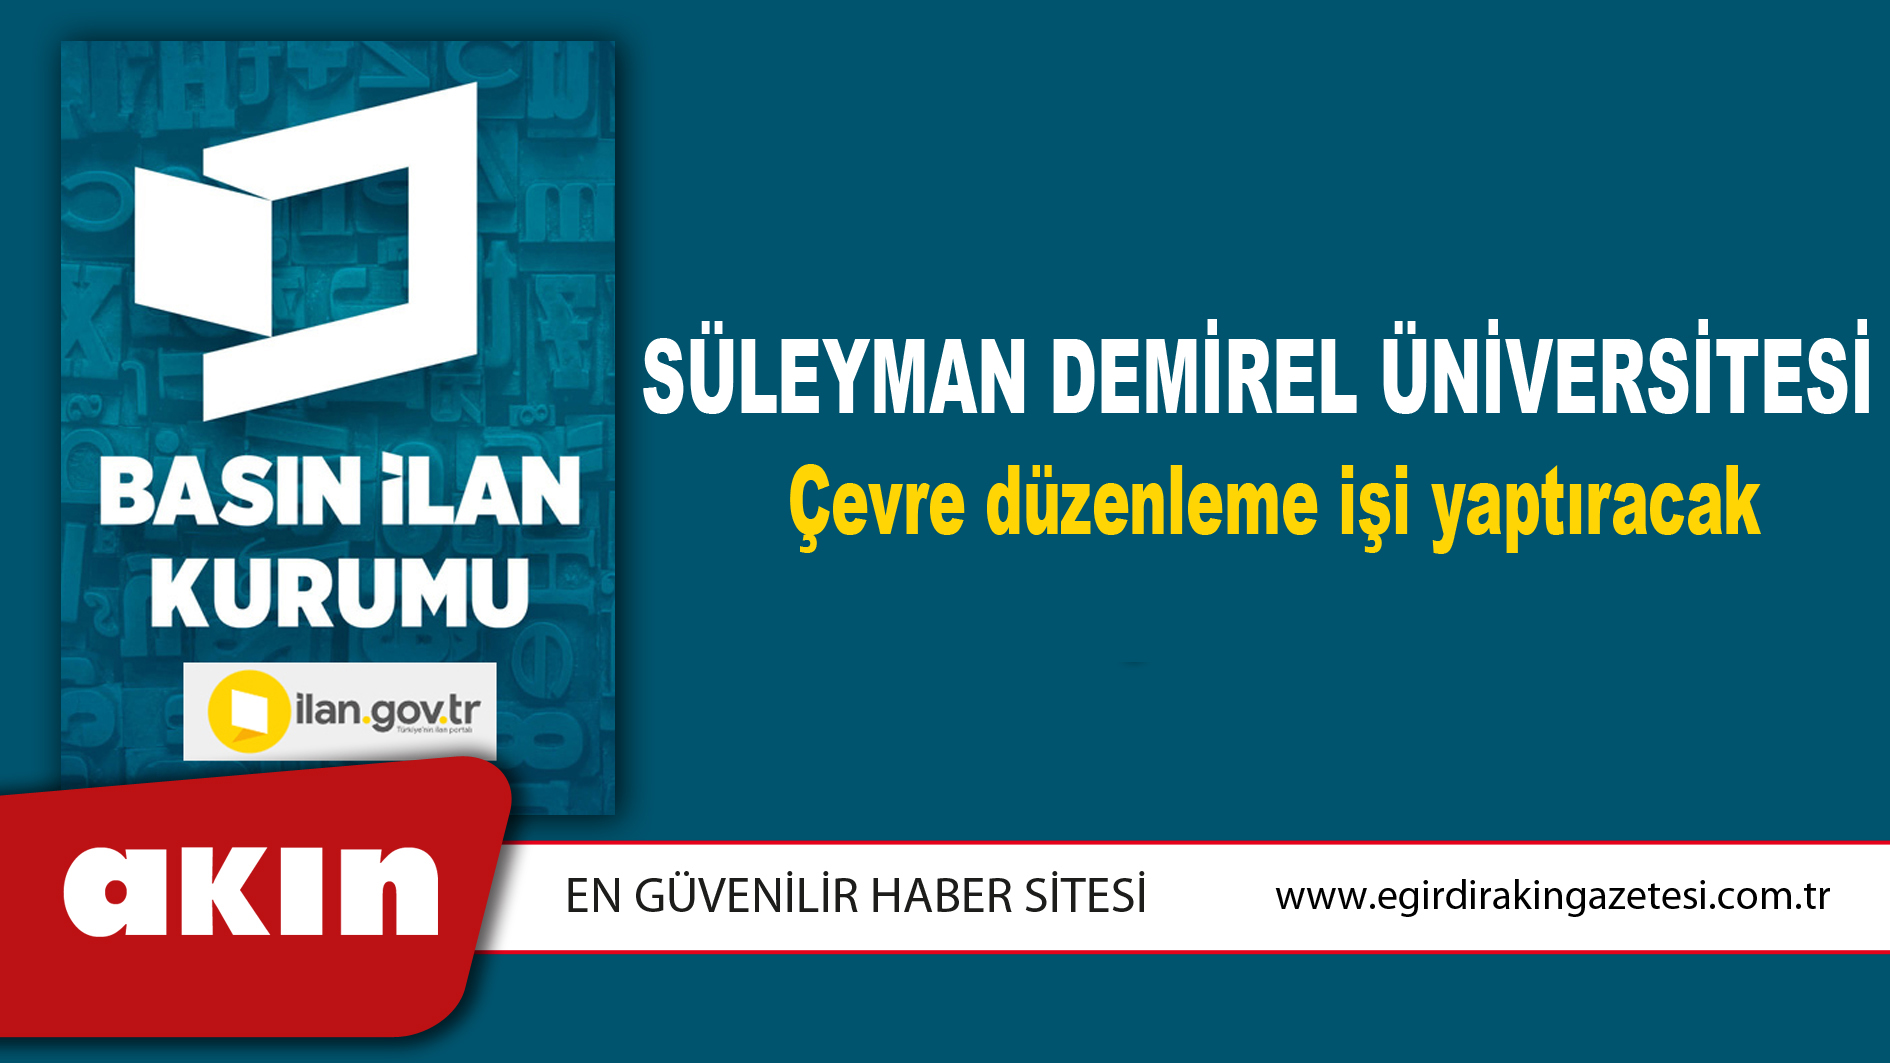 Süleyman Demirel Üniversitesi Çevre düzenleme işi yaptıracak